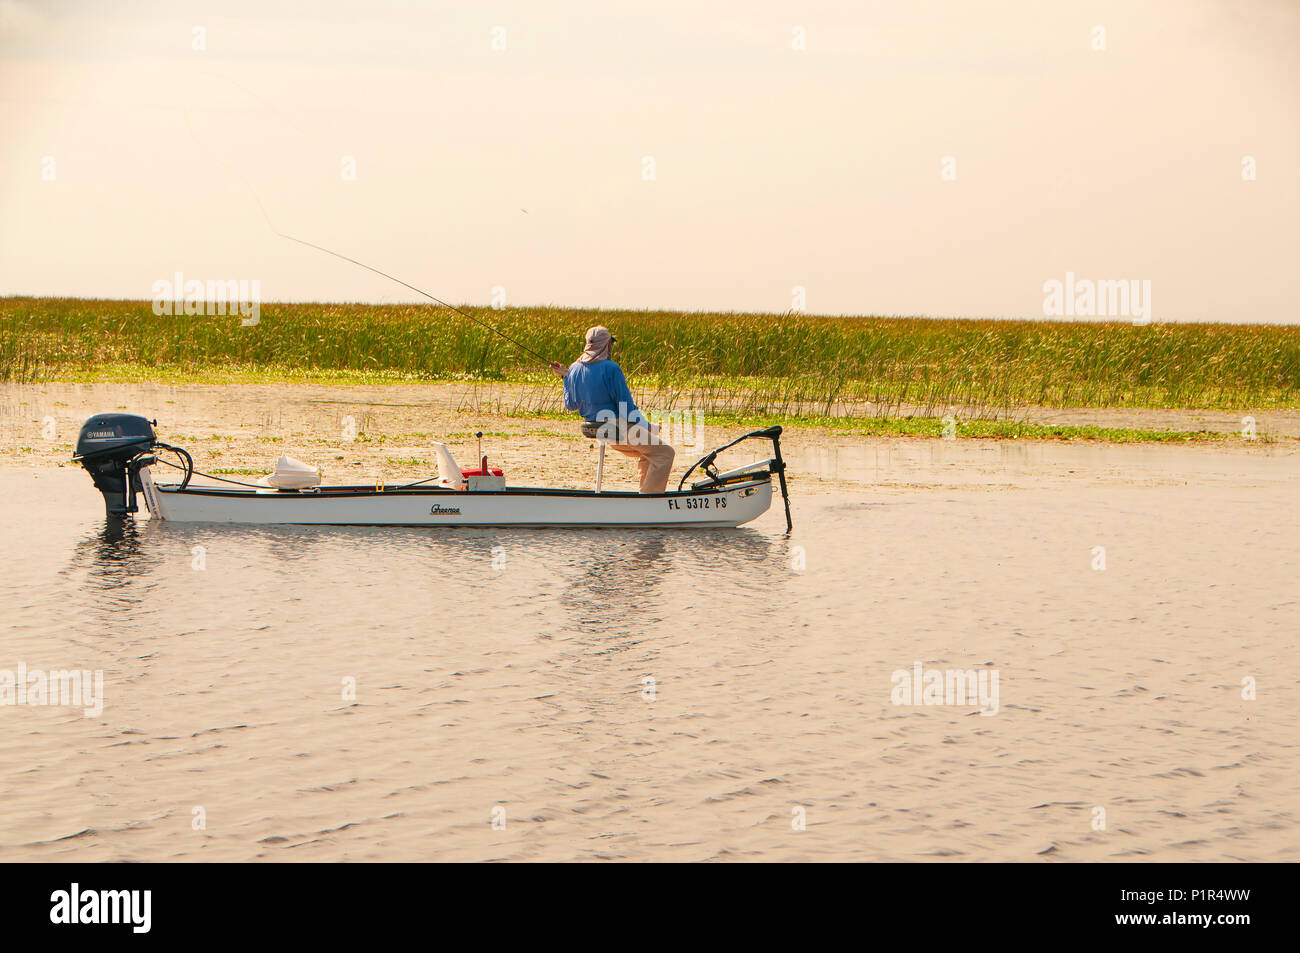 See Okeechobee ist einer der oberen Largemouth bass Seen in den USA viel von der Fischerei ist in flachen Gewässern mit dichter Vegetation. Stockfoto